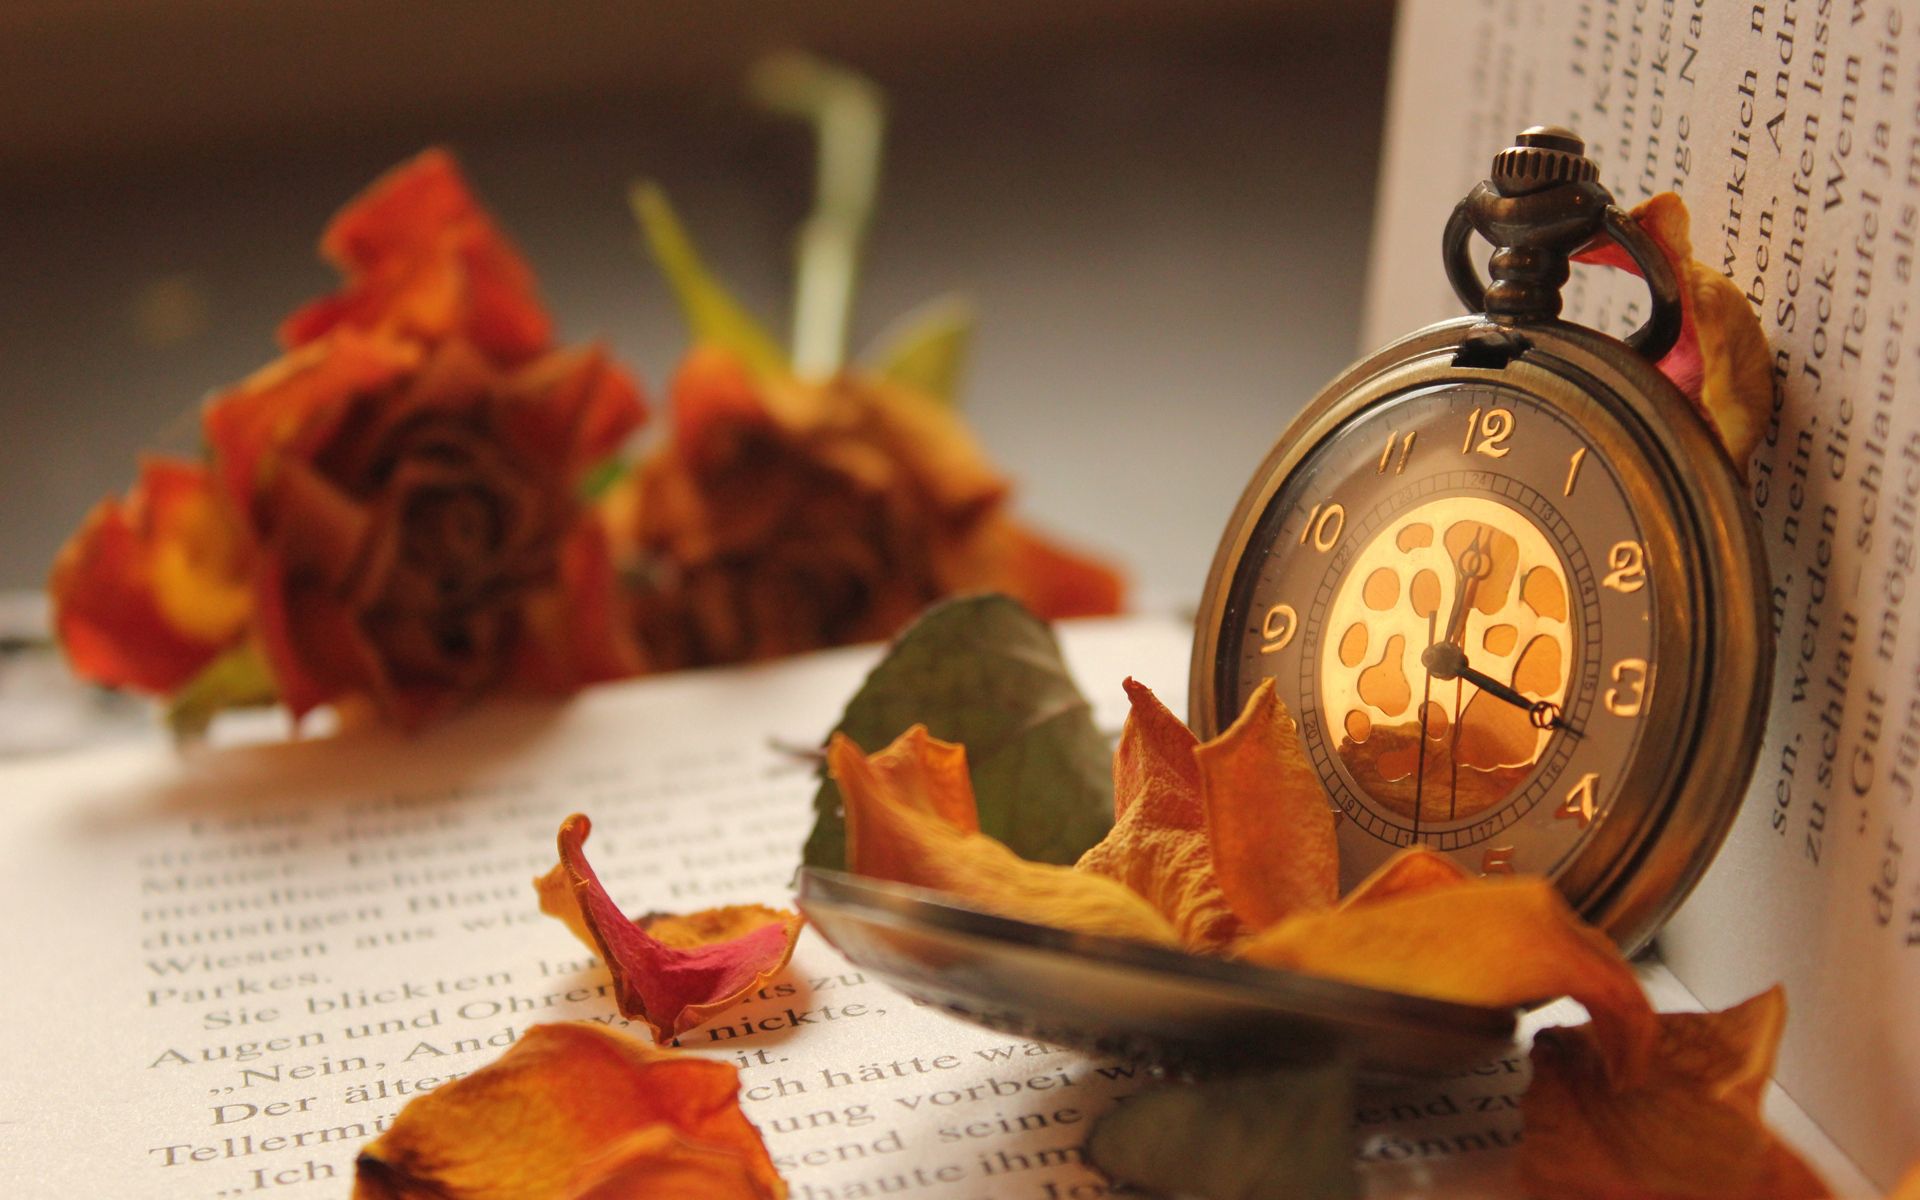 flowers, roses, clock, miscellanea, miscellaneous, petals, book, pocket